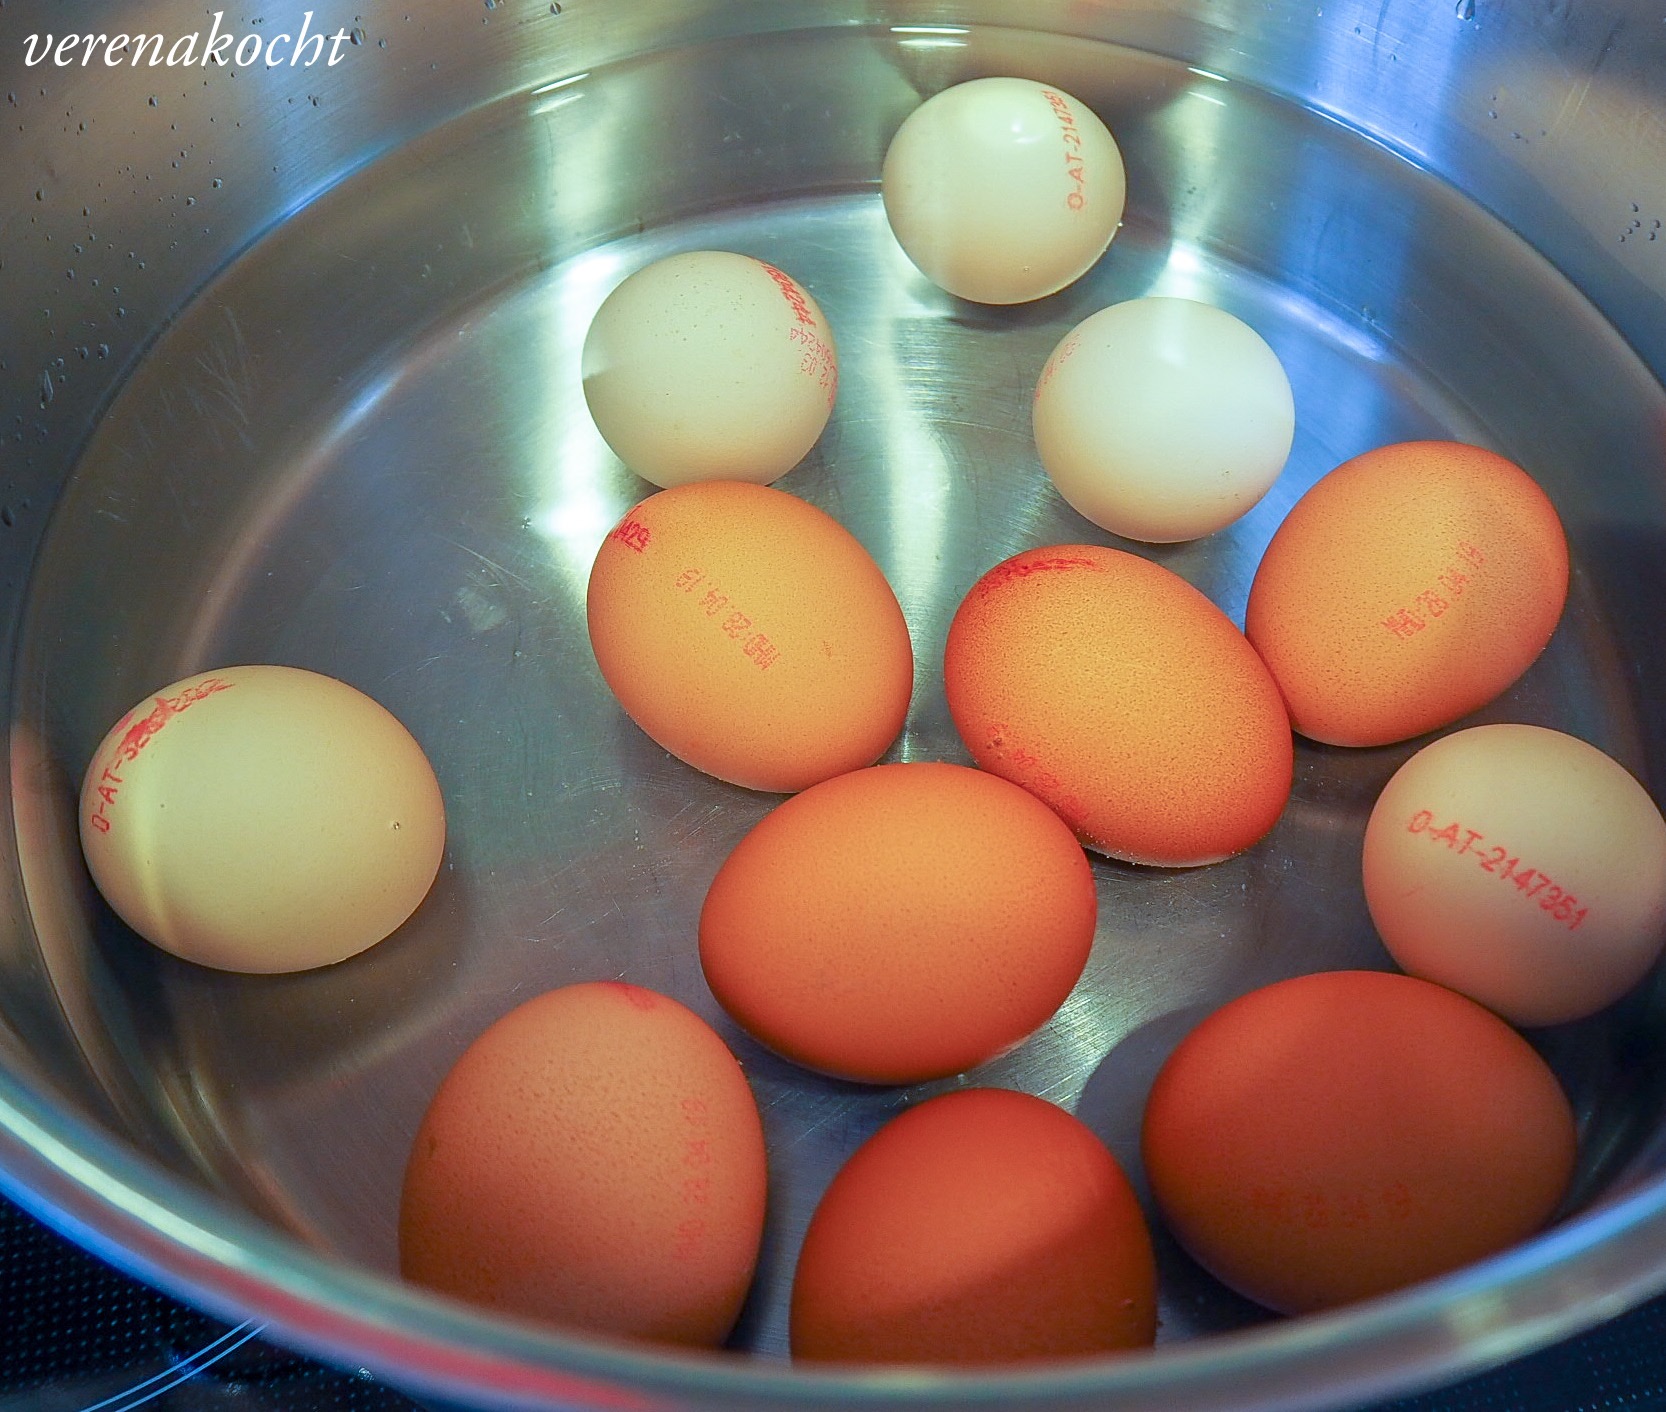 eingelegte Gewürz-Eier (und) das Picknick kann kommen